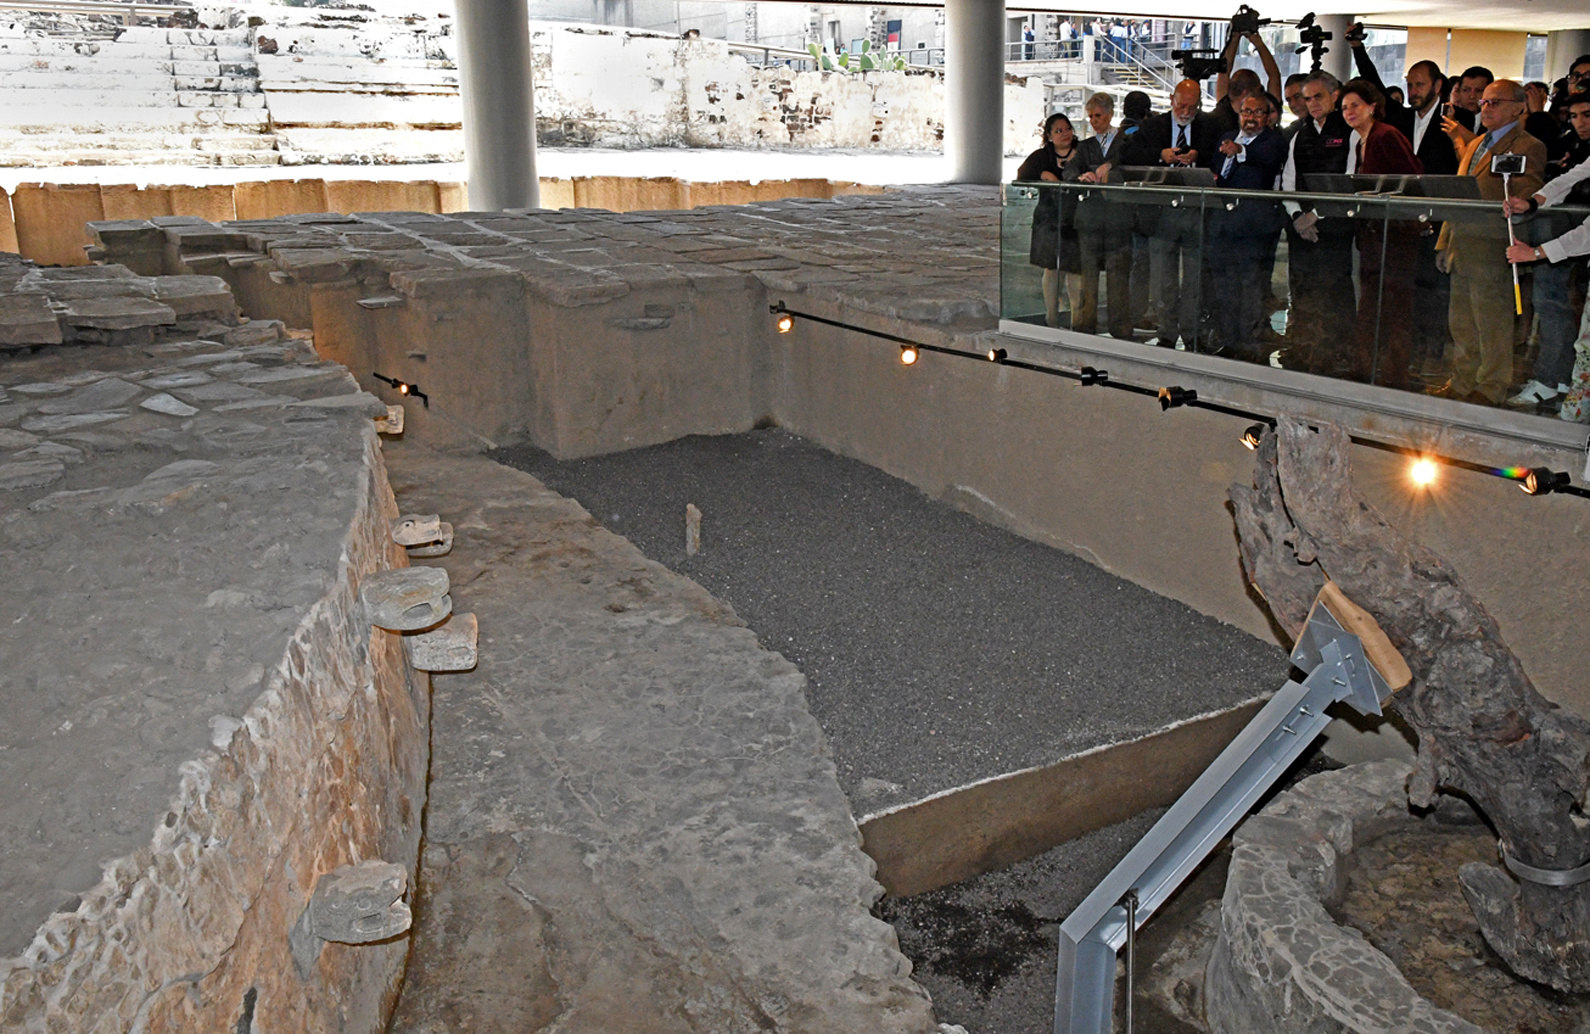  Museo del Templo Mayor exhibe nuevos hallazgos arqueológicos